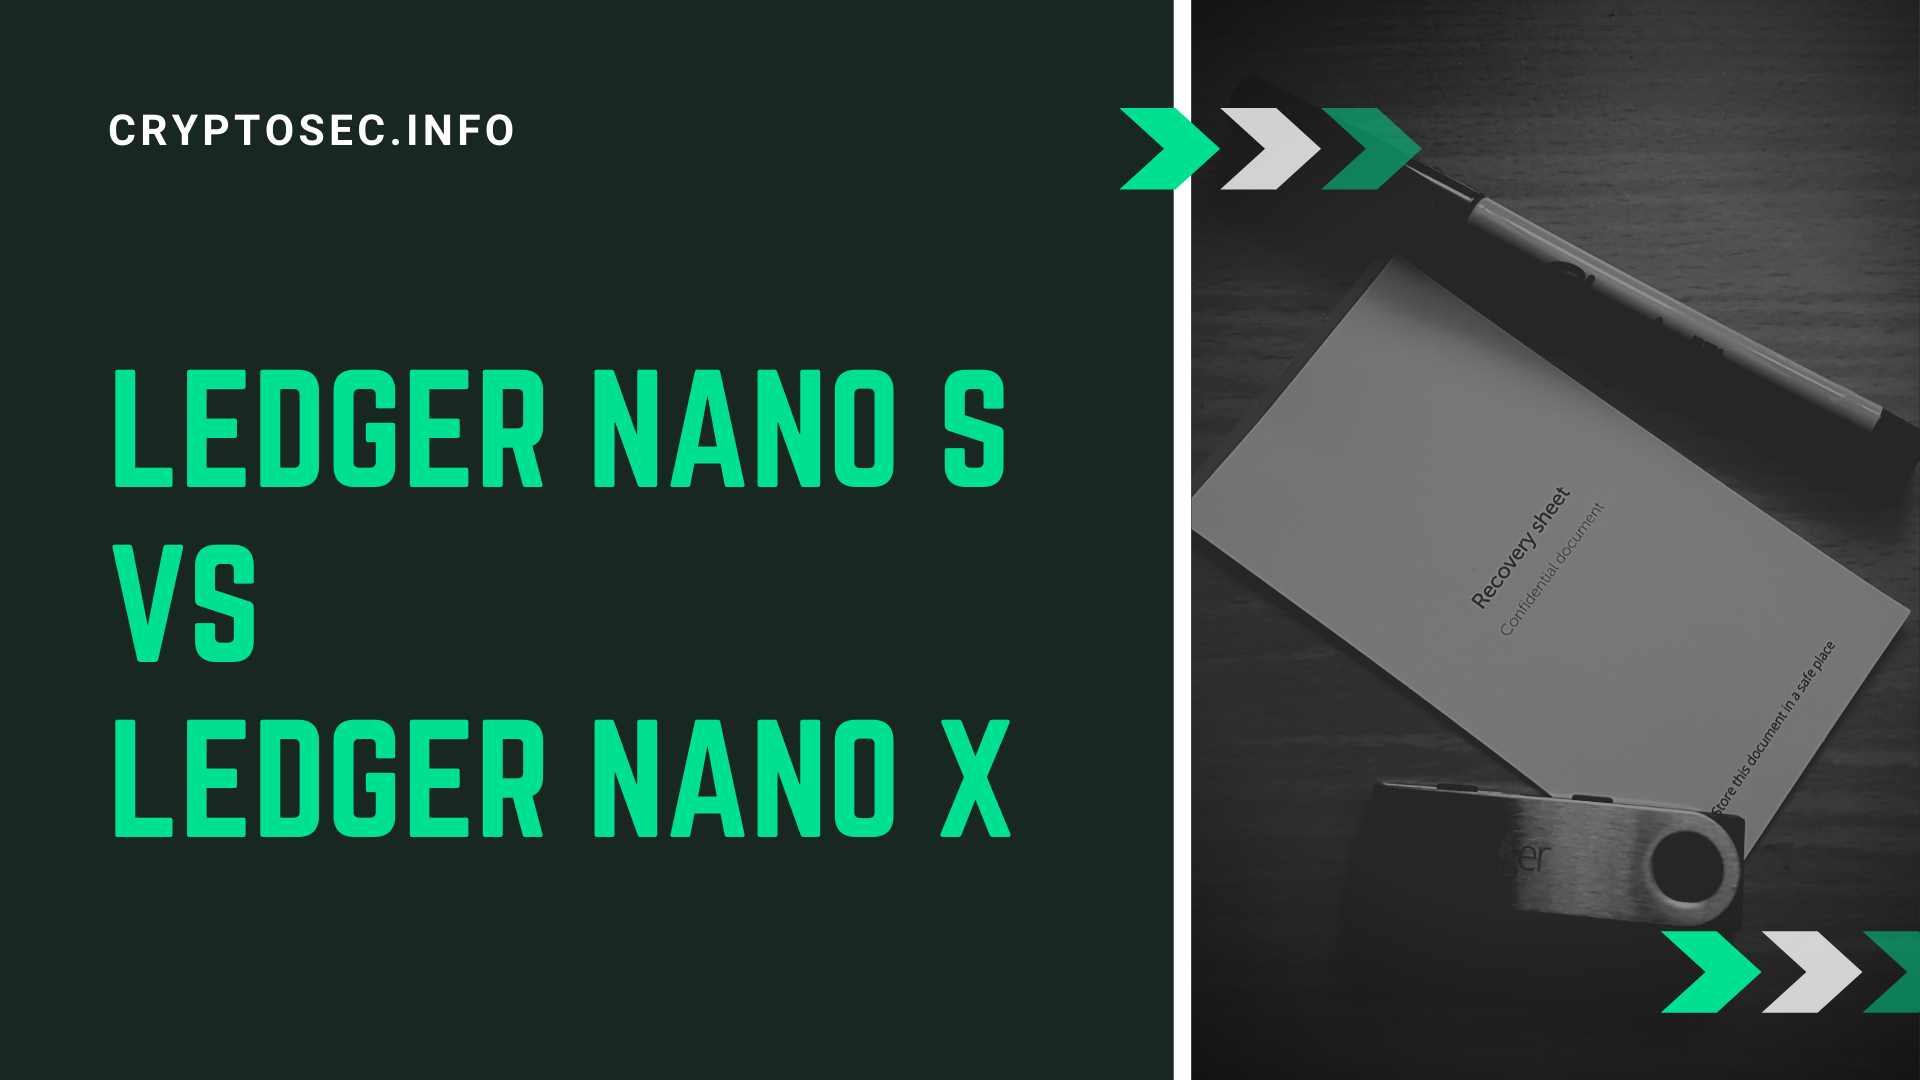 Ledger nano s vs ledger nano x